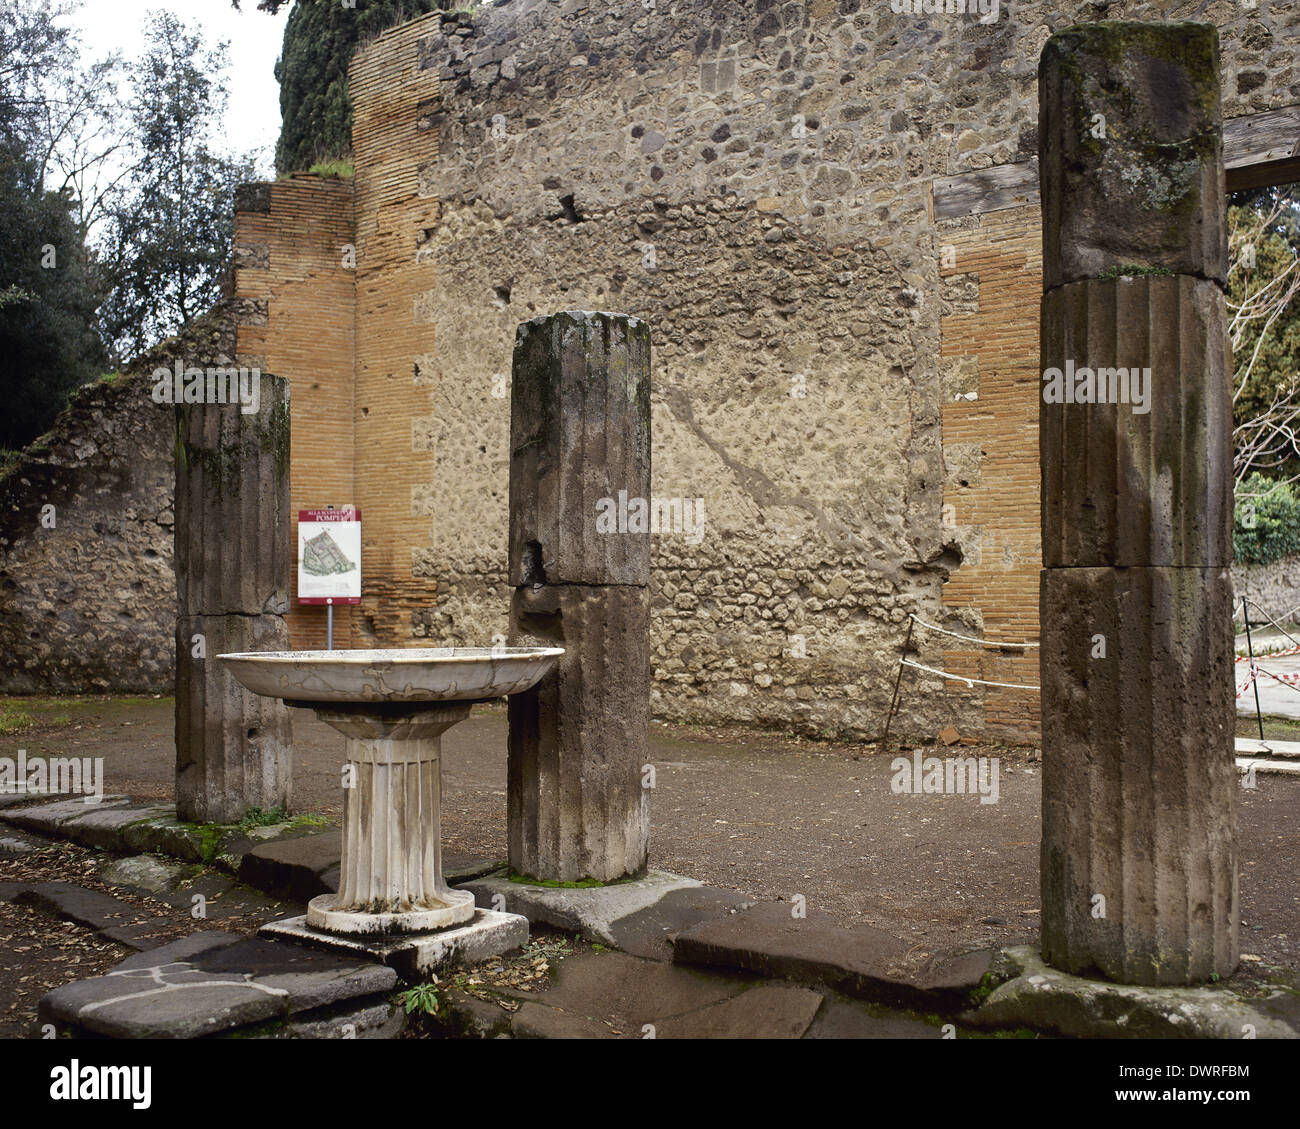 L'Italia. Pompei. Forum di forma triangolare. Colonne scanalate all'interno del quadrato, stile dorico. Foto Stock